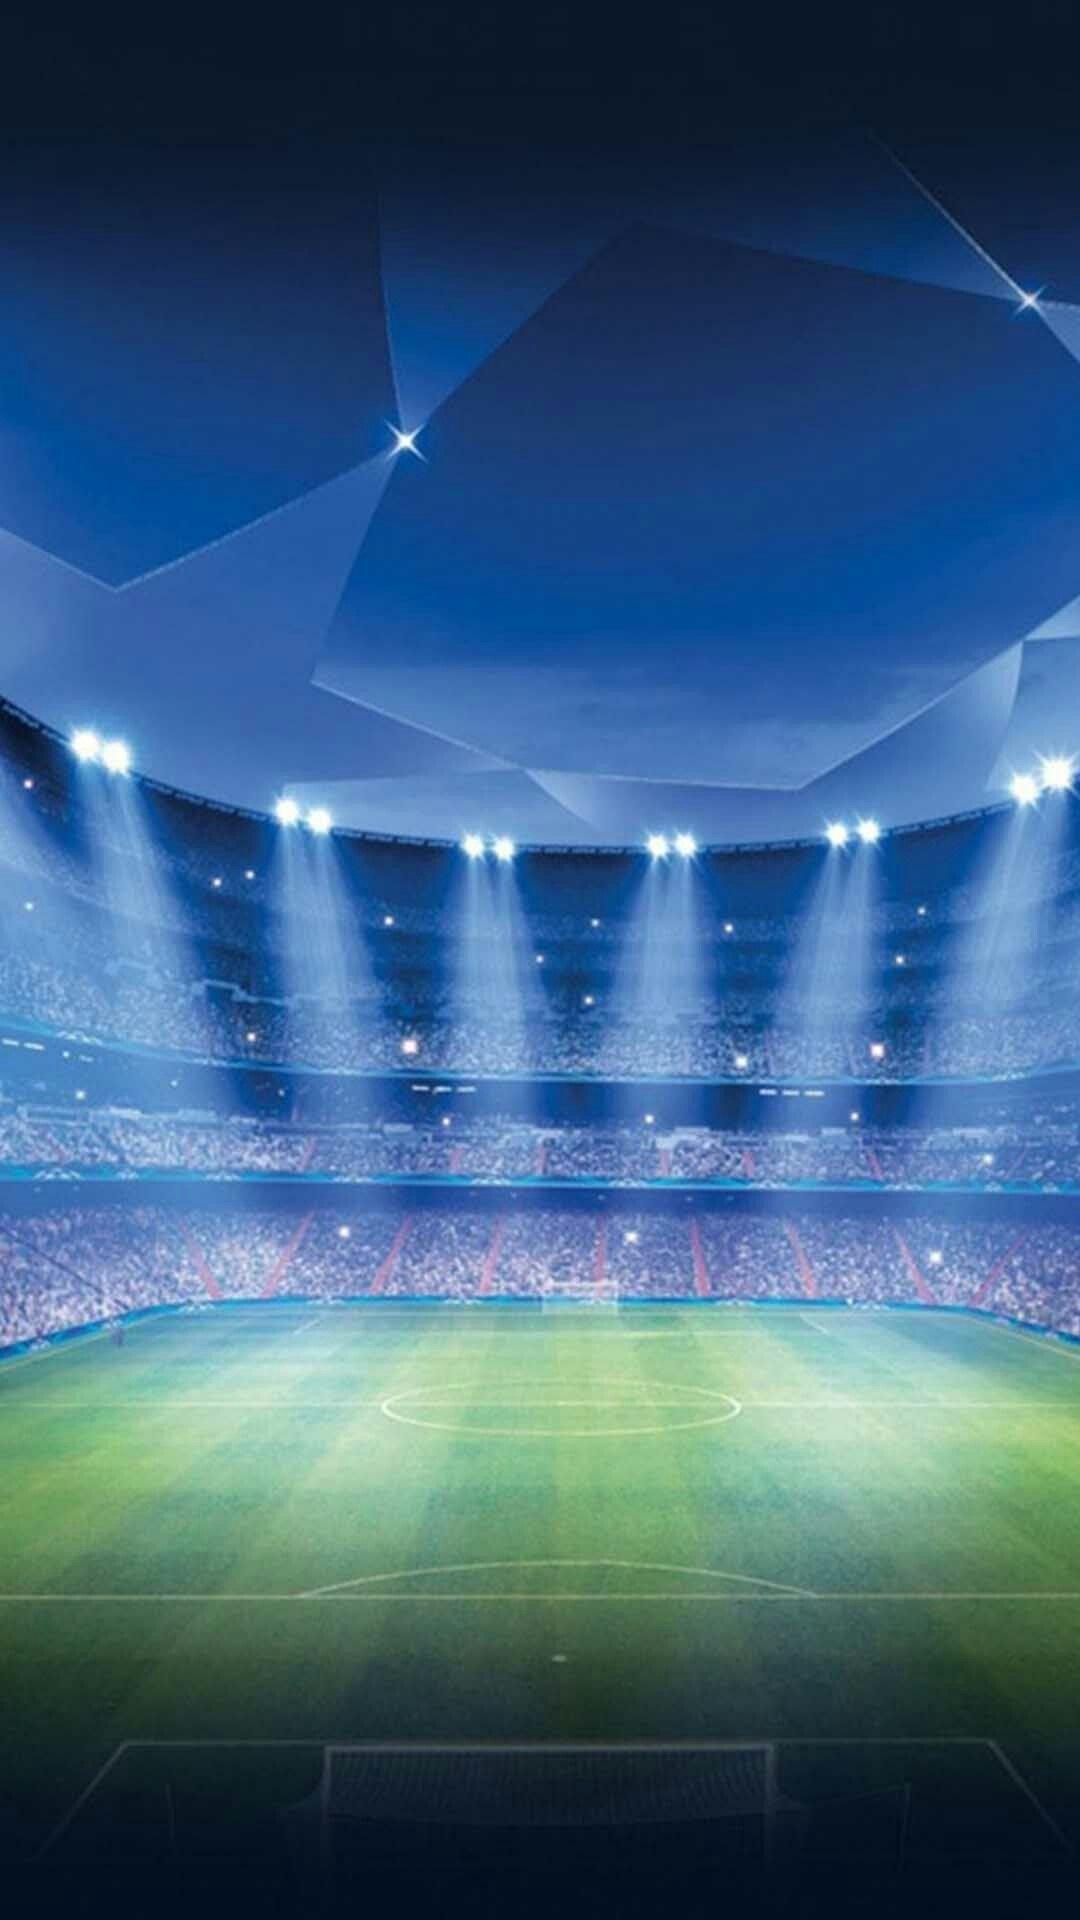 Soccer Stadium Wallpaper. Stadium wallpaper, Football wallpaper, Soccer stadium